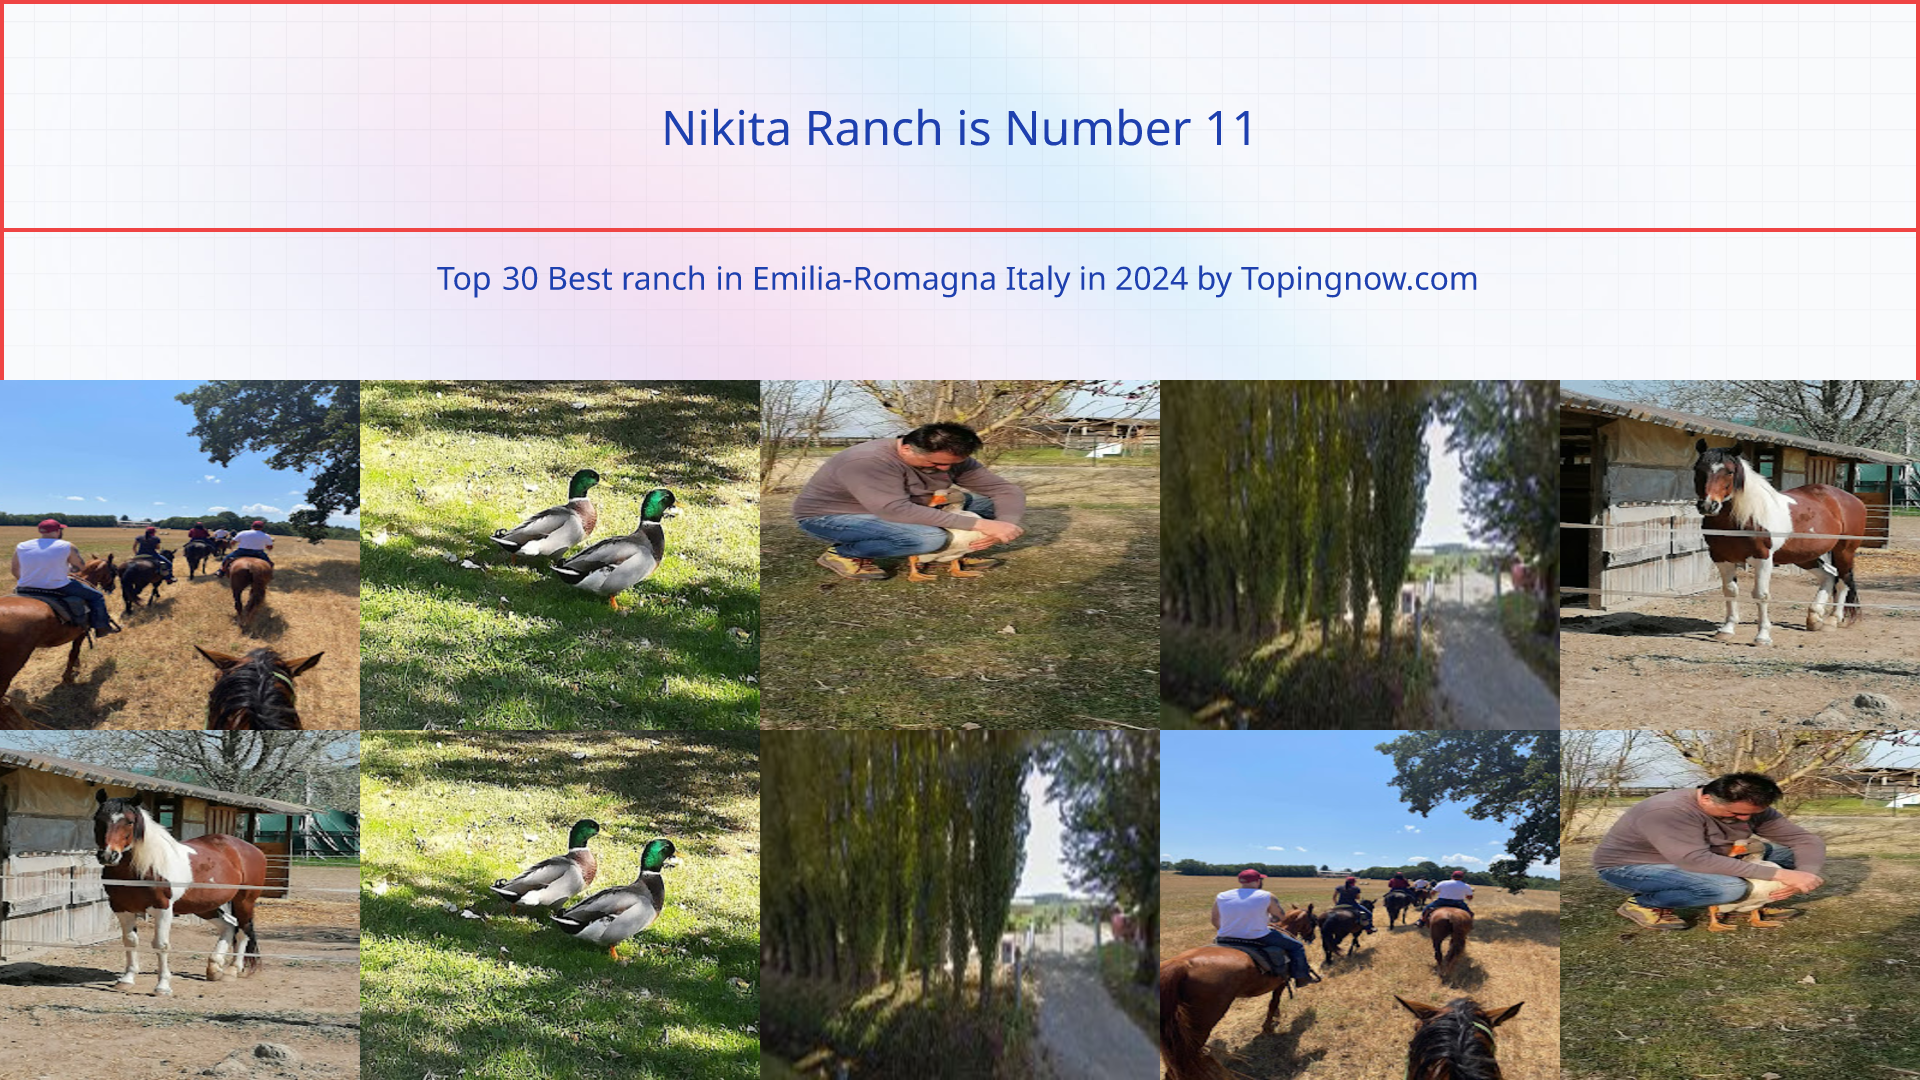 Nikita Ranch: Top 30 Best ranch in Emilia-Romagna Italy in 2024